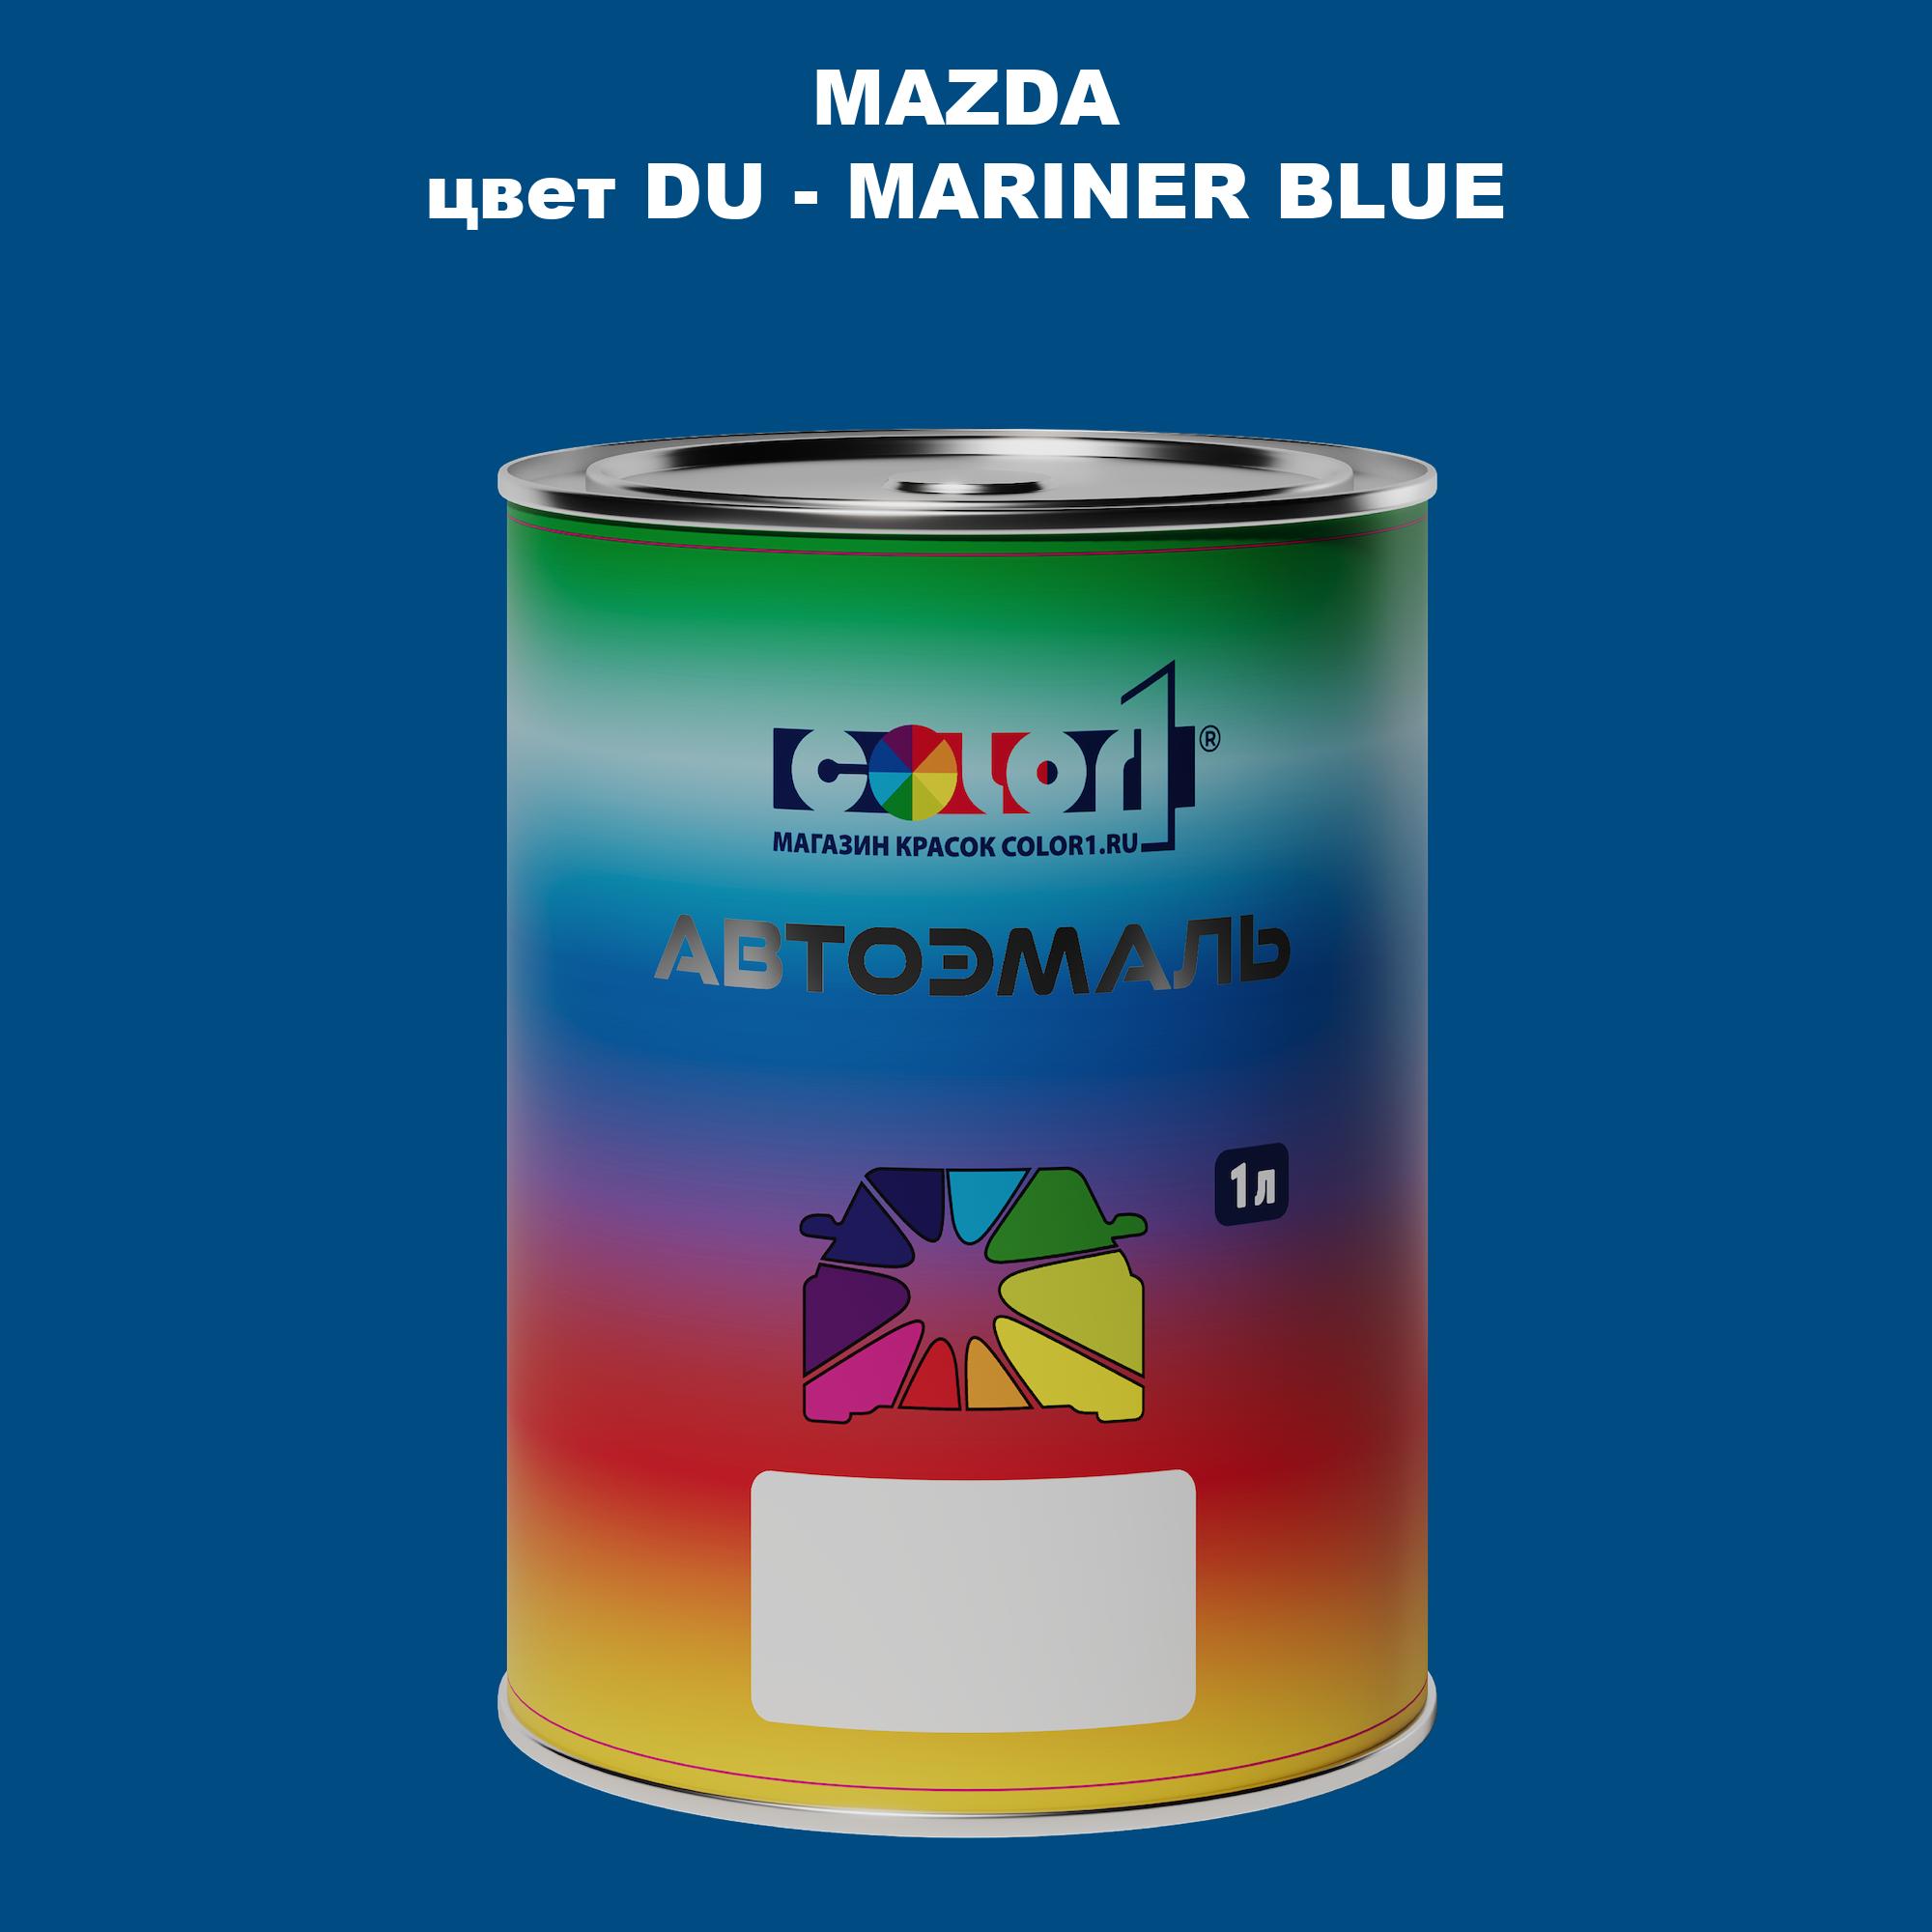 Автомобильная краска COLOR1 для MAZDA, цвет DU - MARINER BLUE